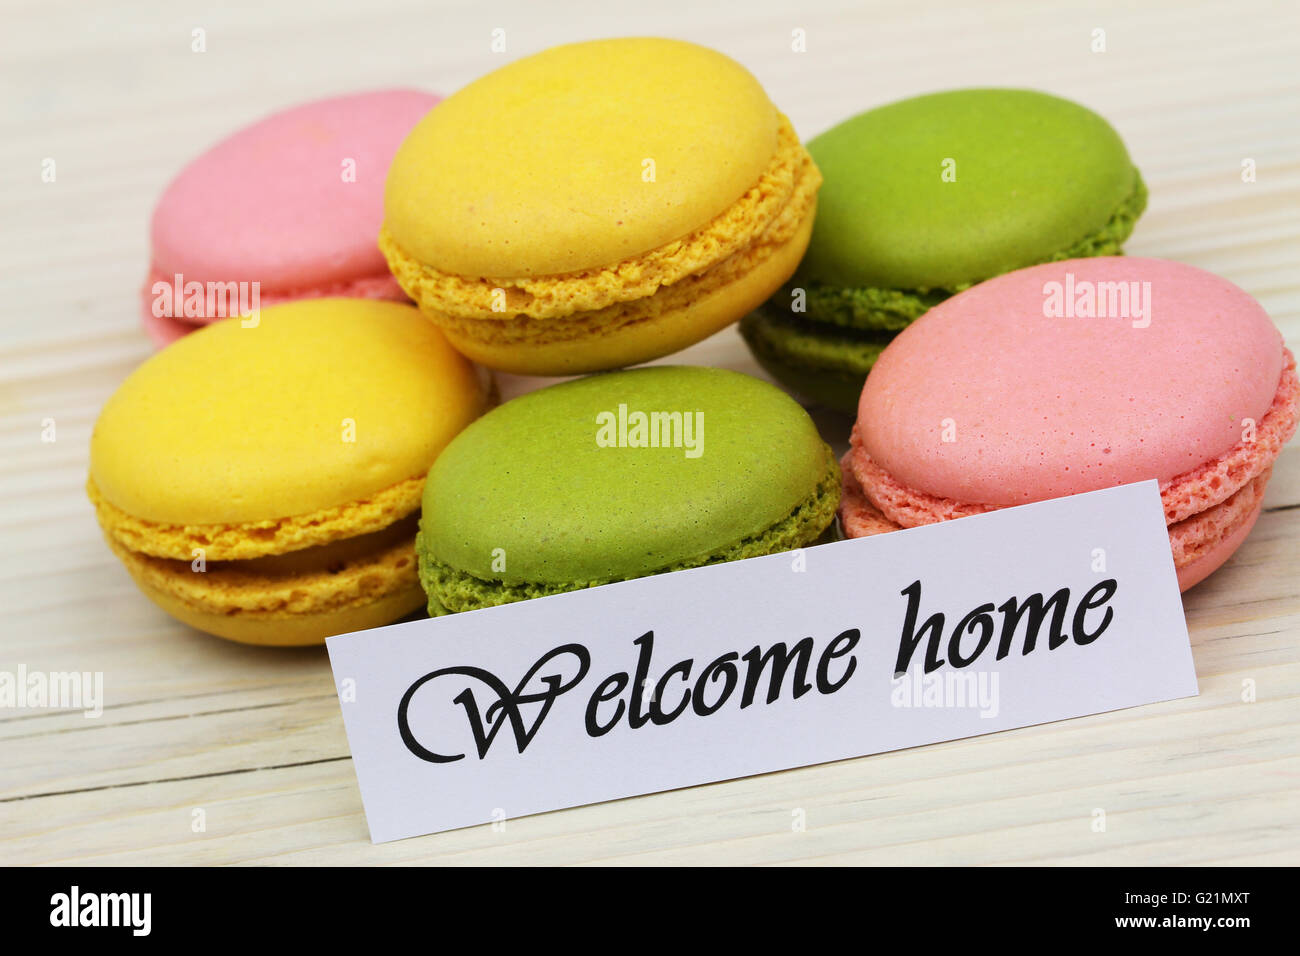 Bienvenue accueil carte avec macarons sucrés colorés Banque D'Images